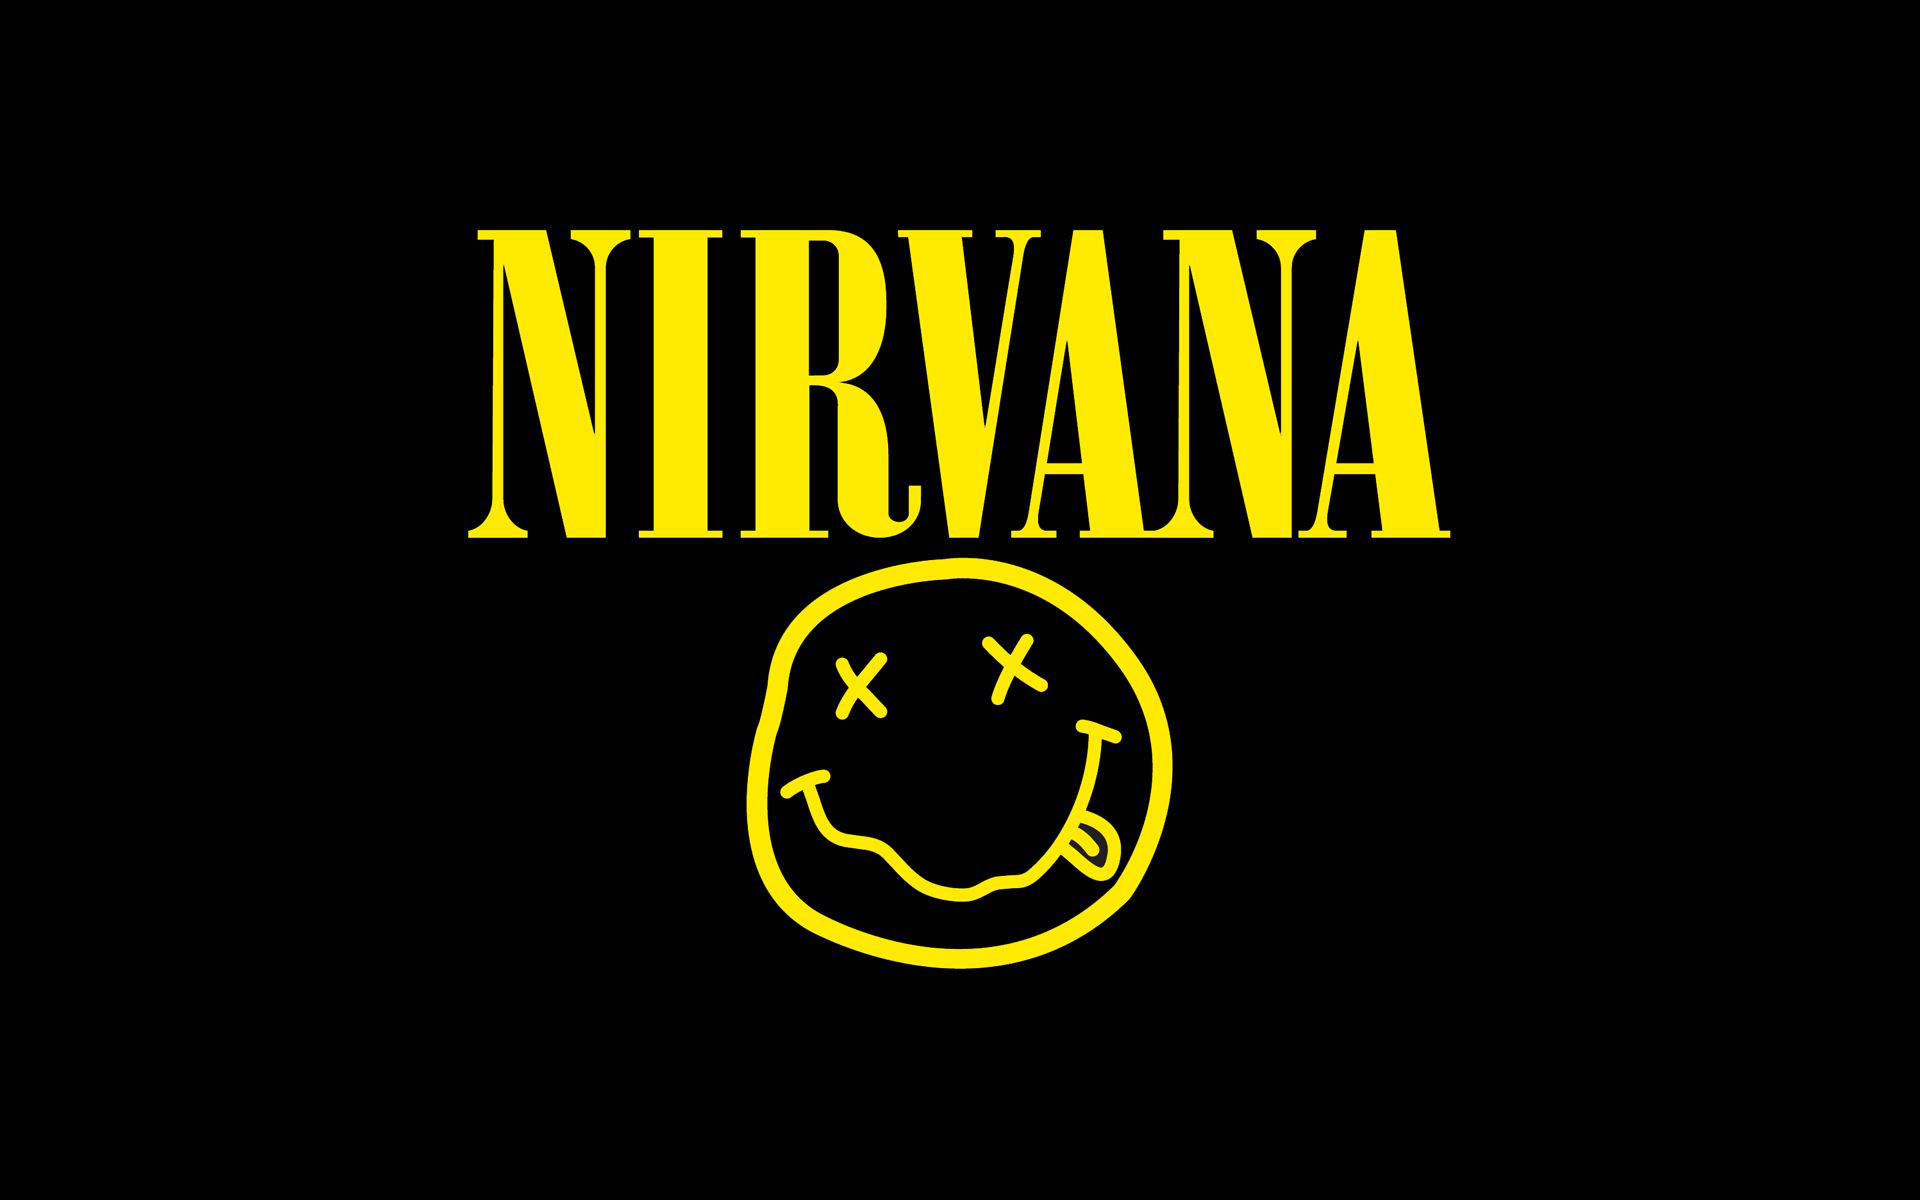 Logotipode La Banda Nirvana En 4k Fondo de pantalla